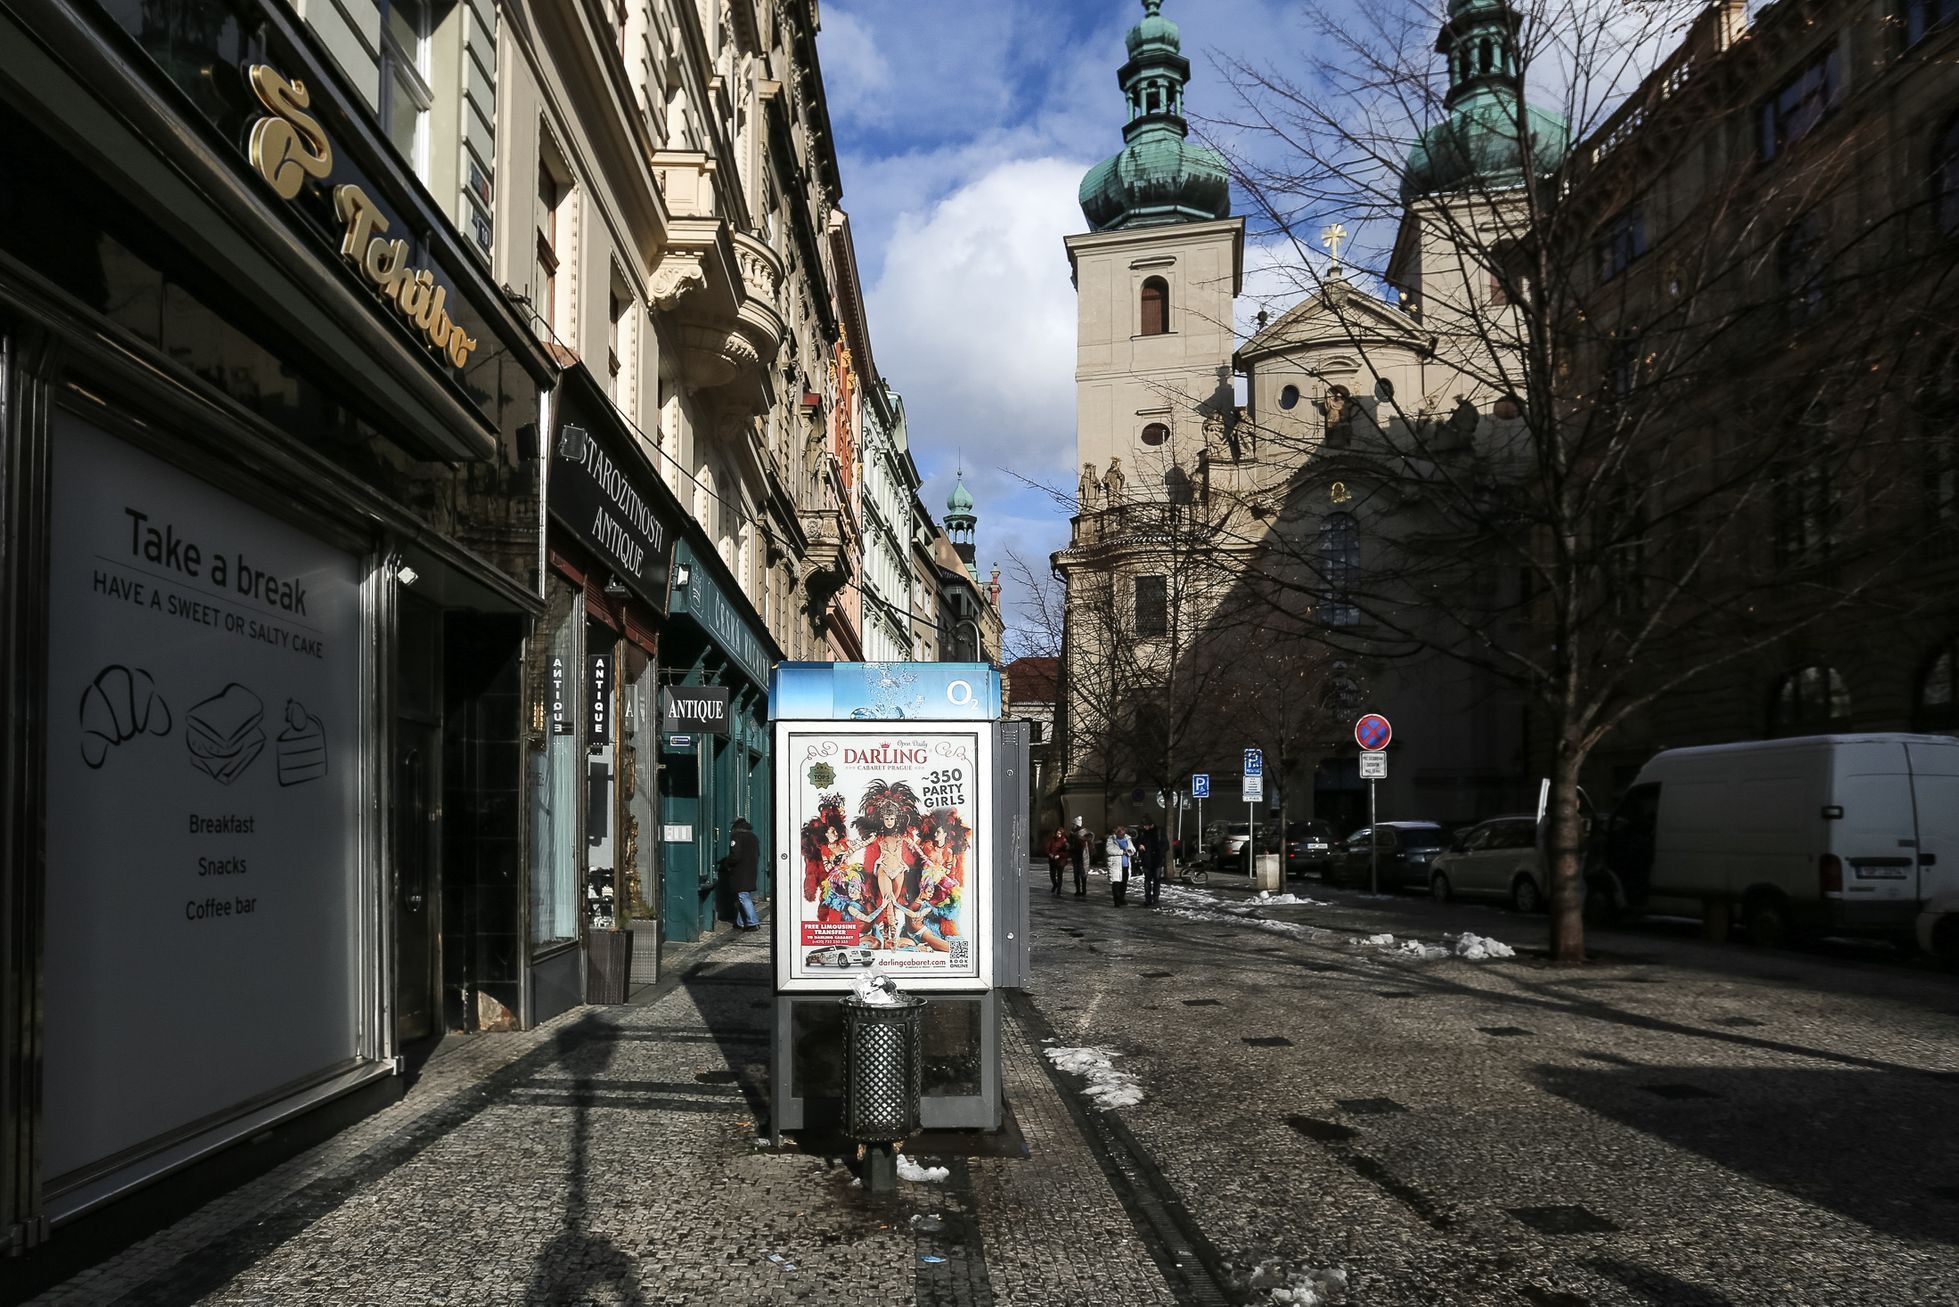 Reklama v městské památkové zóně v centru Prahy, vizuální smog